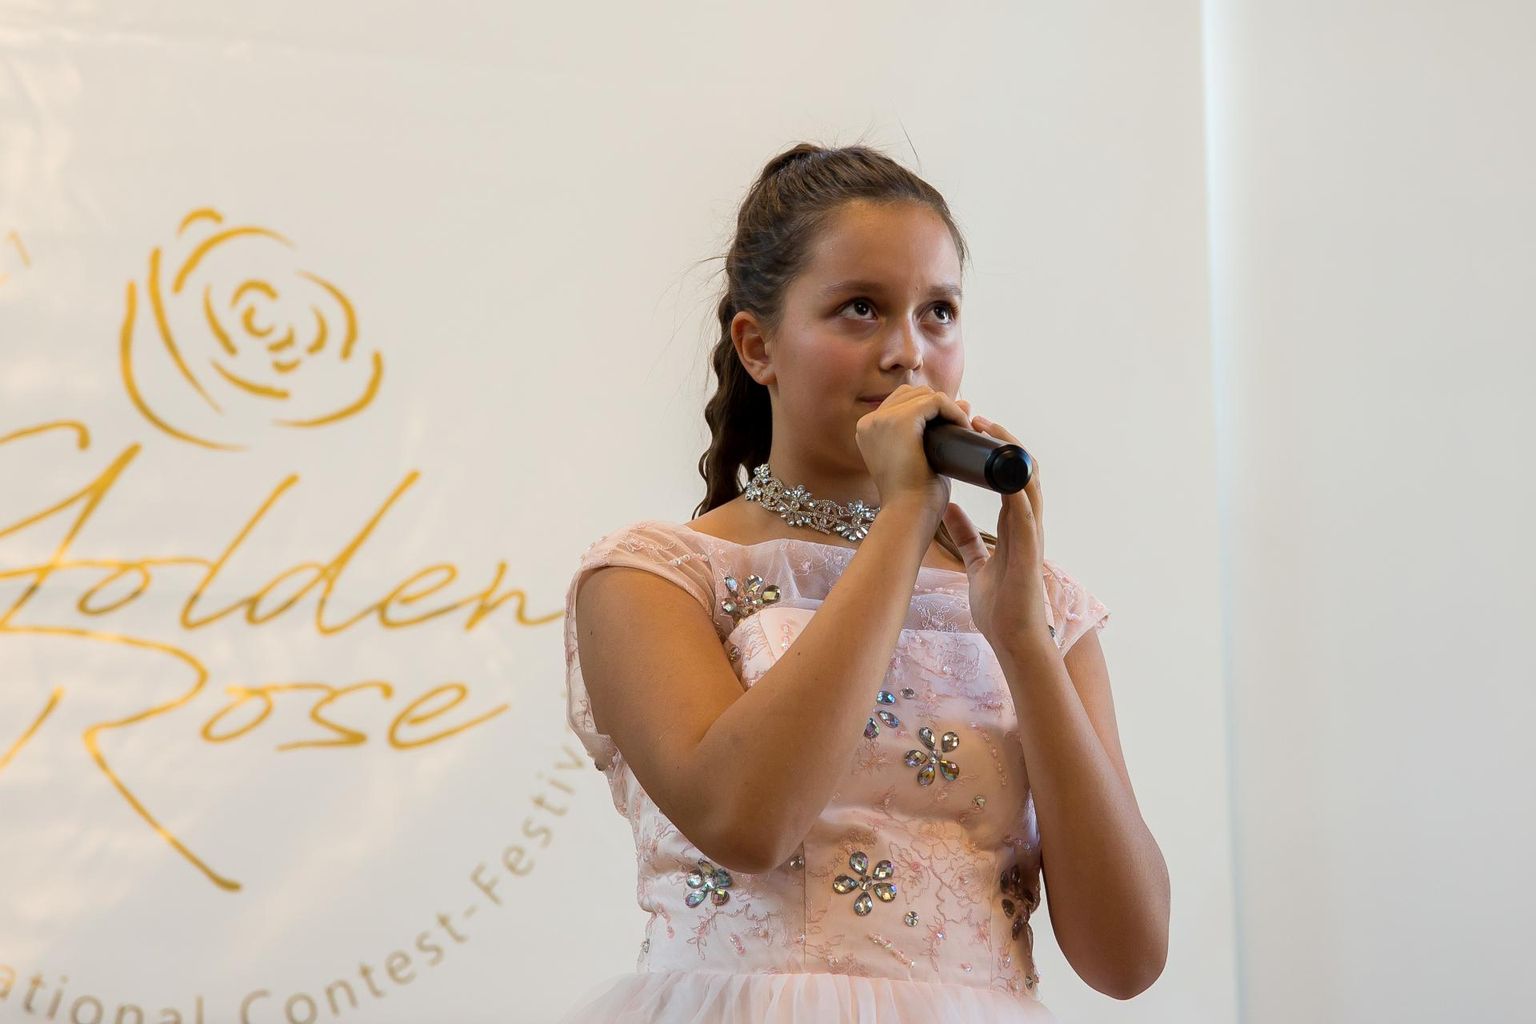 Tänavuse konkursi võitis 12aastane Tallinna neiu artisti­nimega ­Lera Delighti laulu­stuudiost.